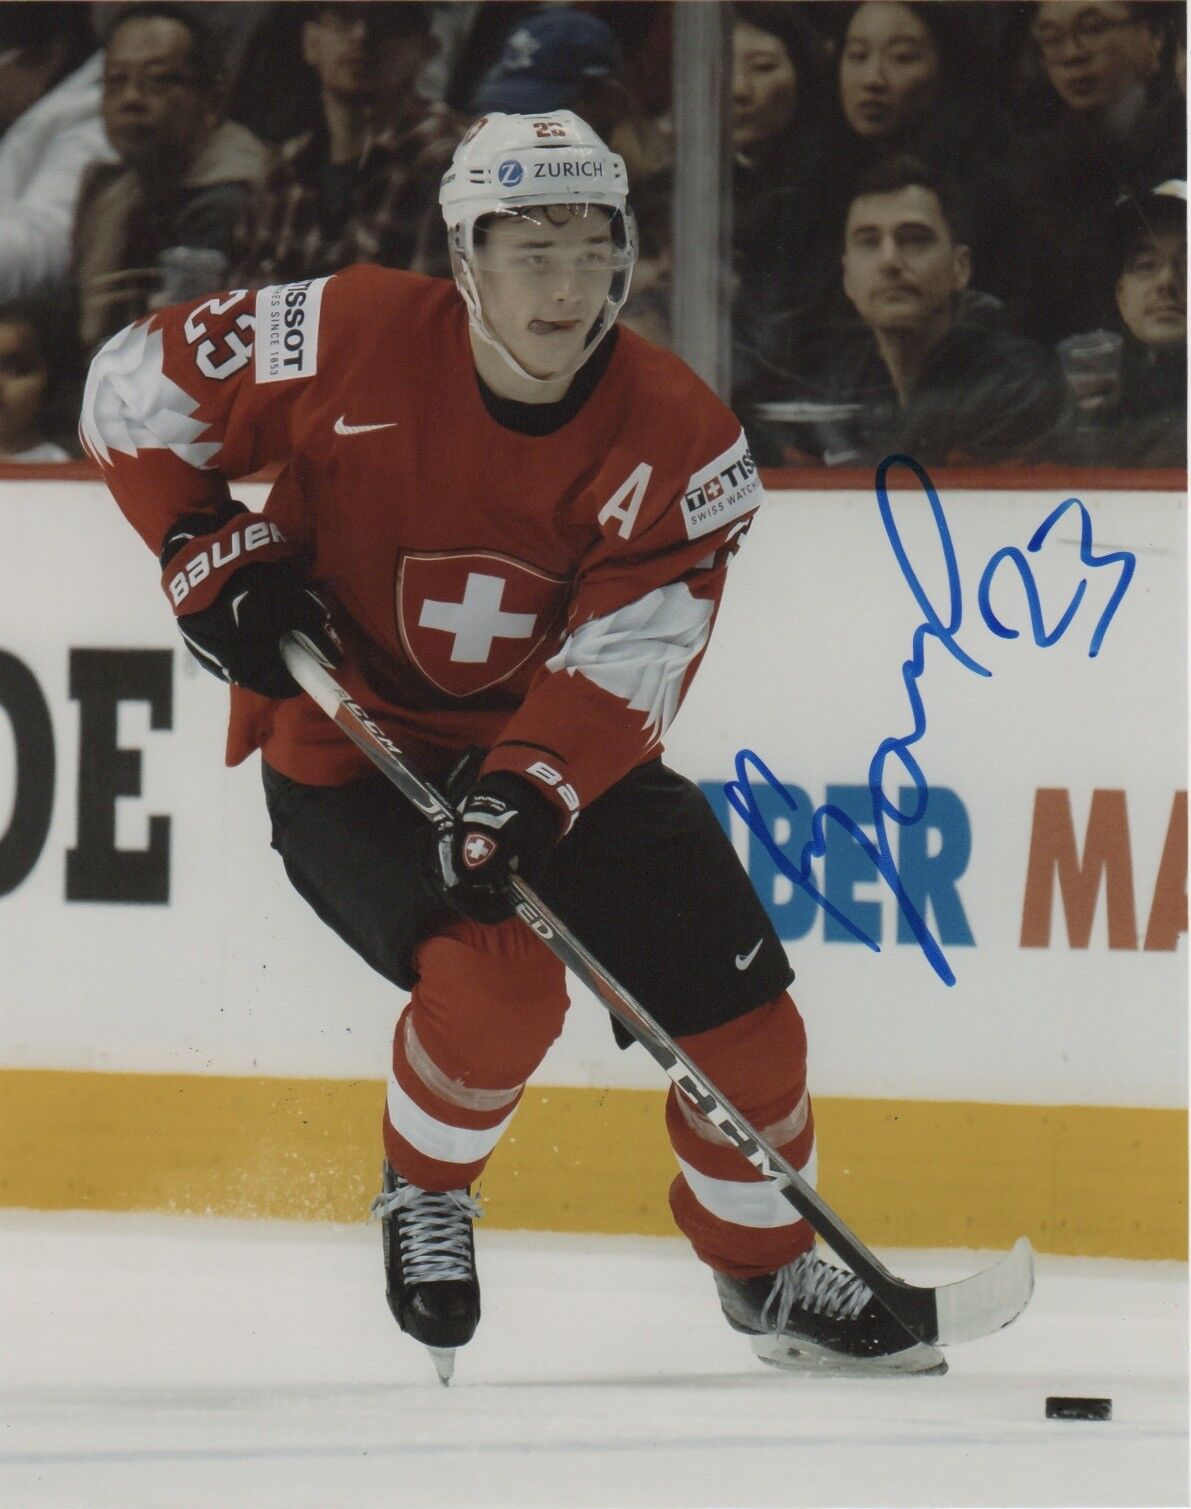 Switzerland Philipp Kurashev Signed Autographed 8x10 NHL Photo Poster painting COA #10